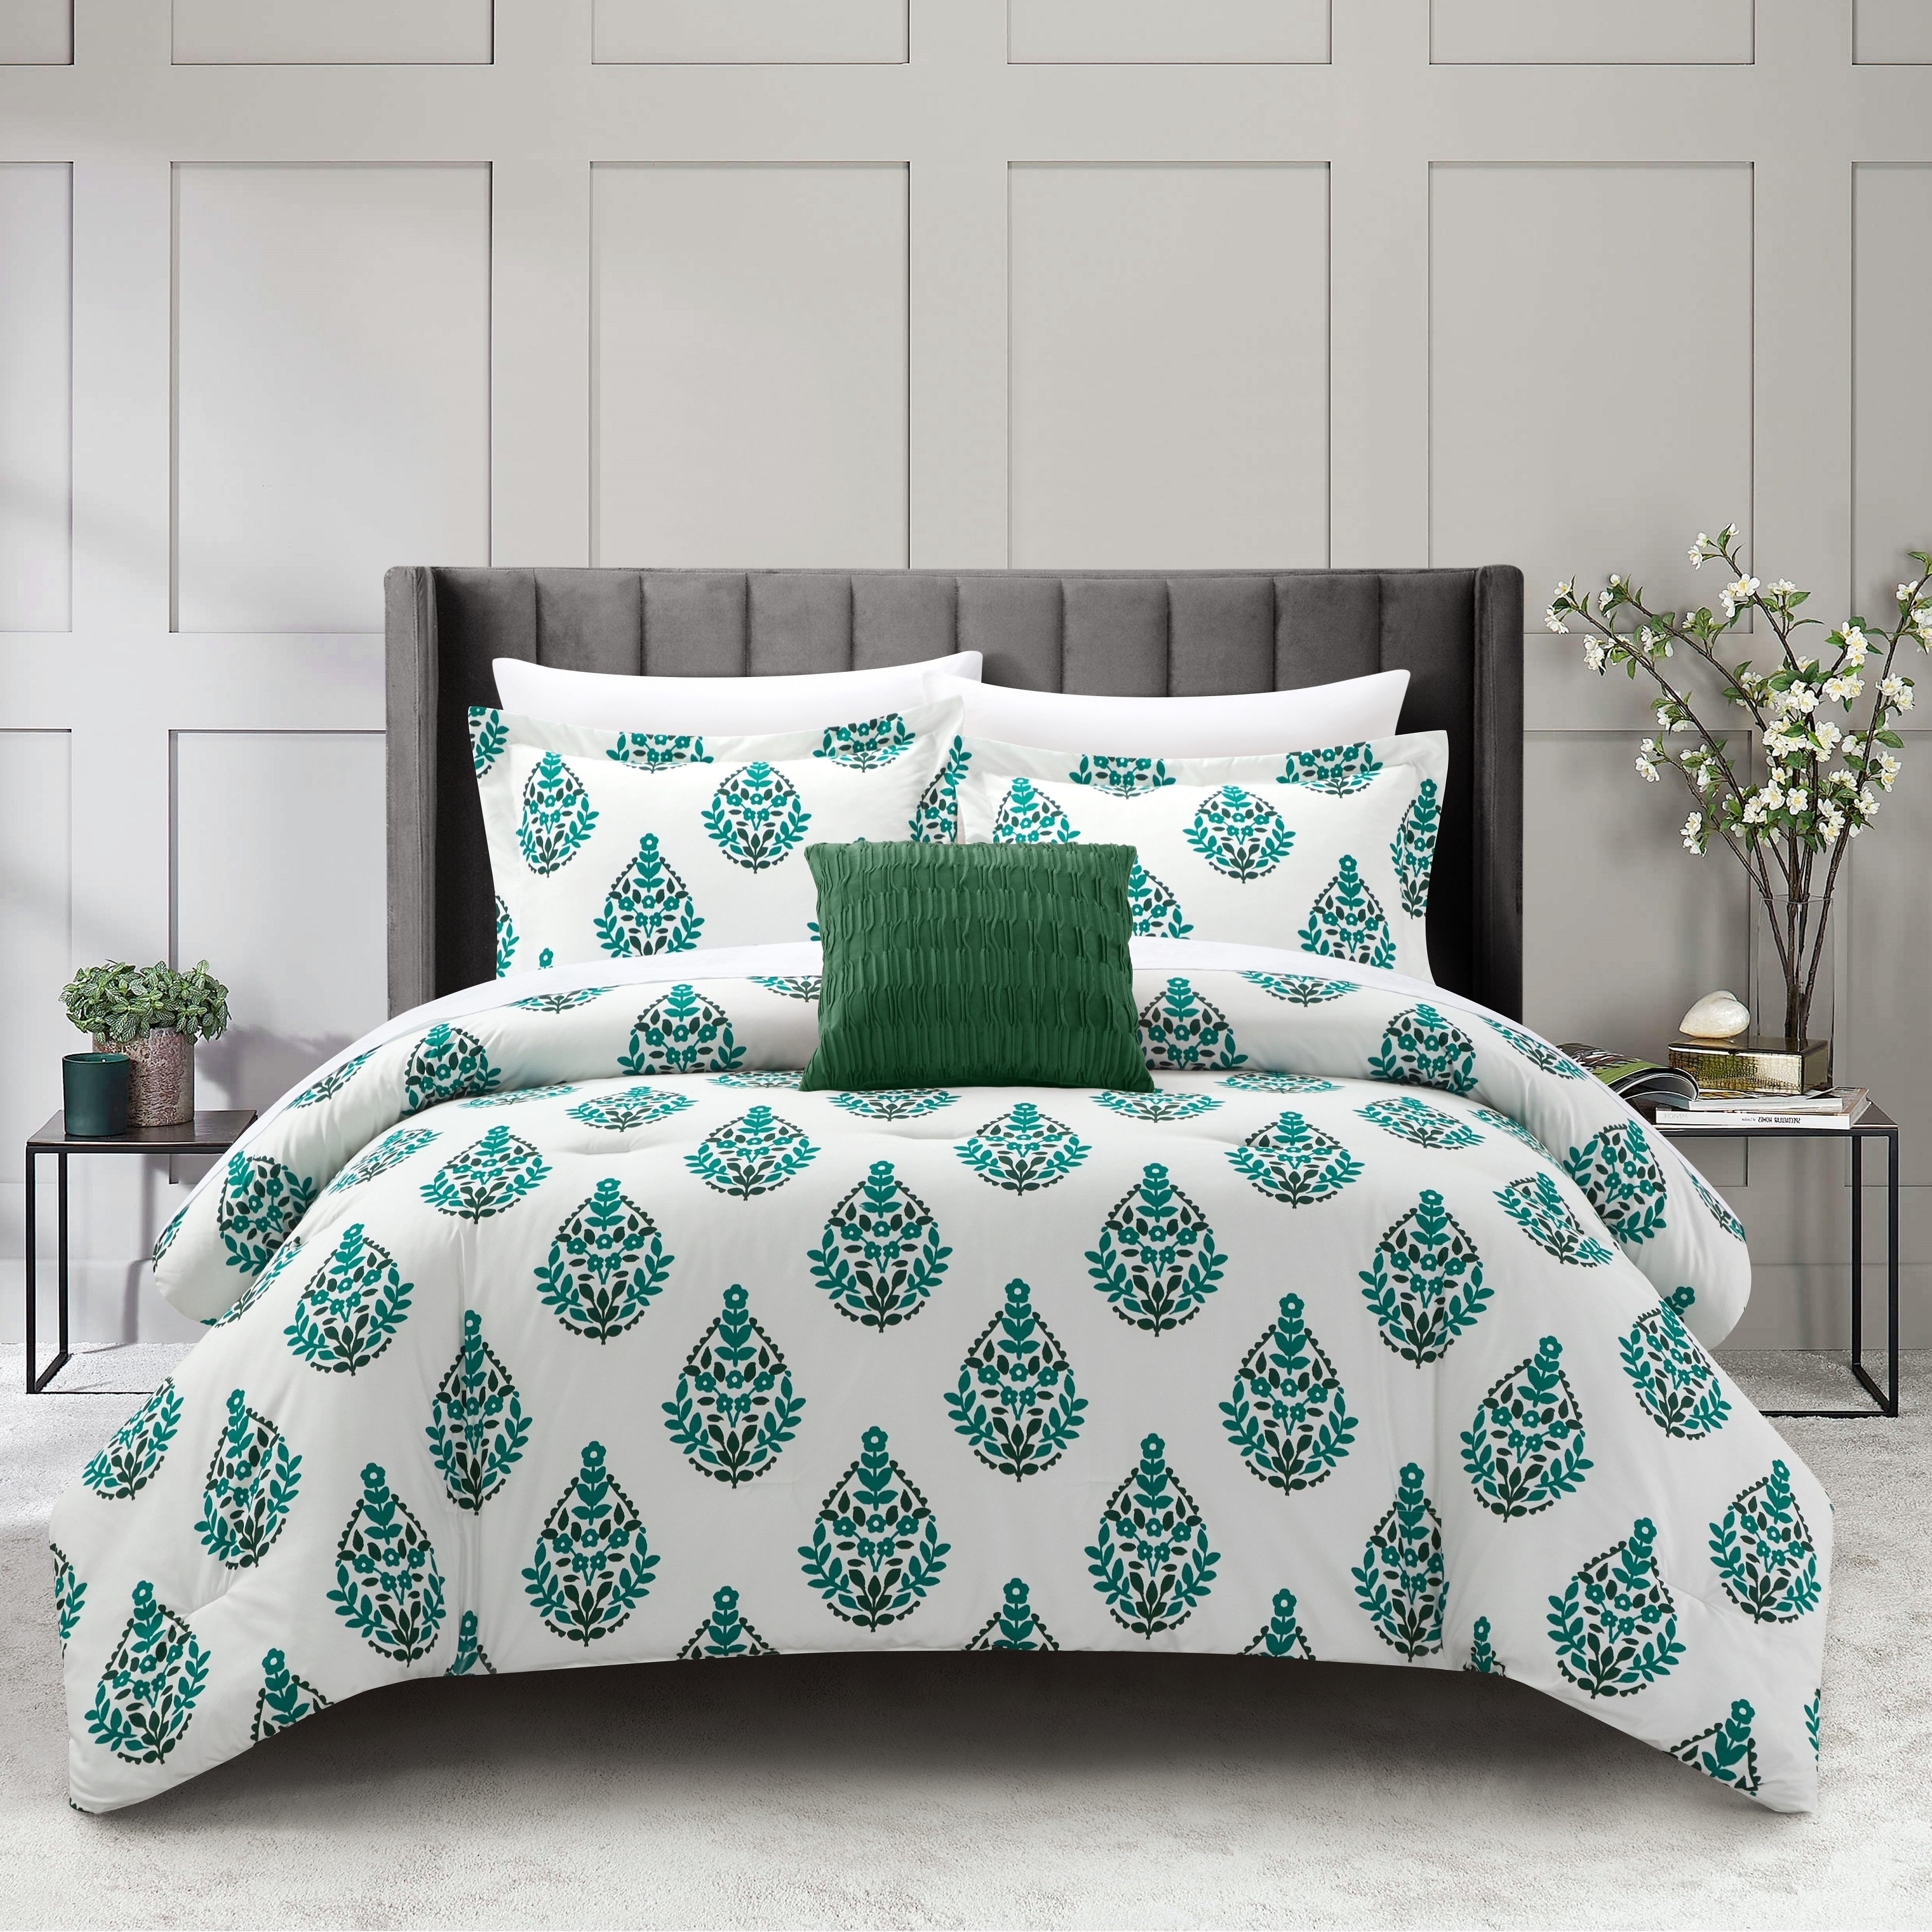 Clairessa 4 Or 3 Piece Comforter Set Floral Medallion Print Design Bedding - Beige, Queen - 4 Piece